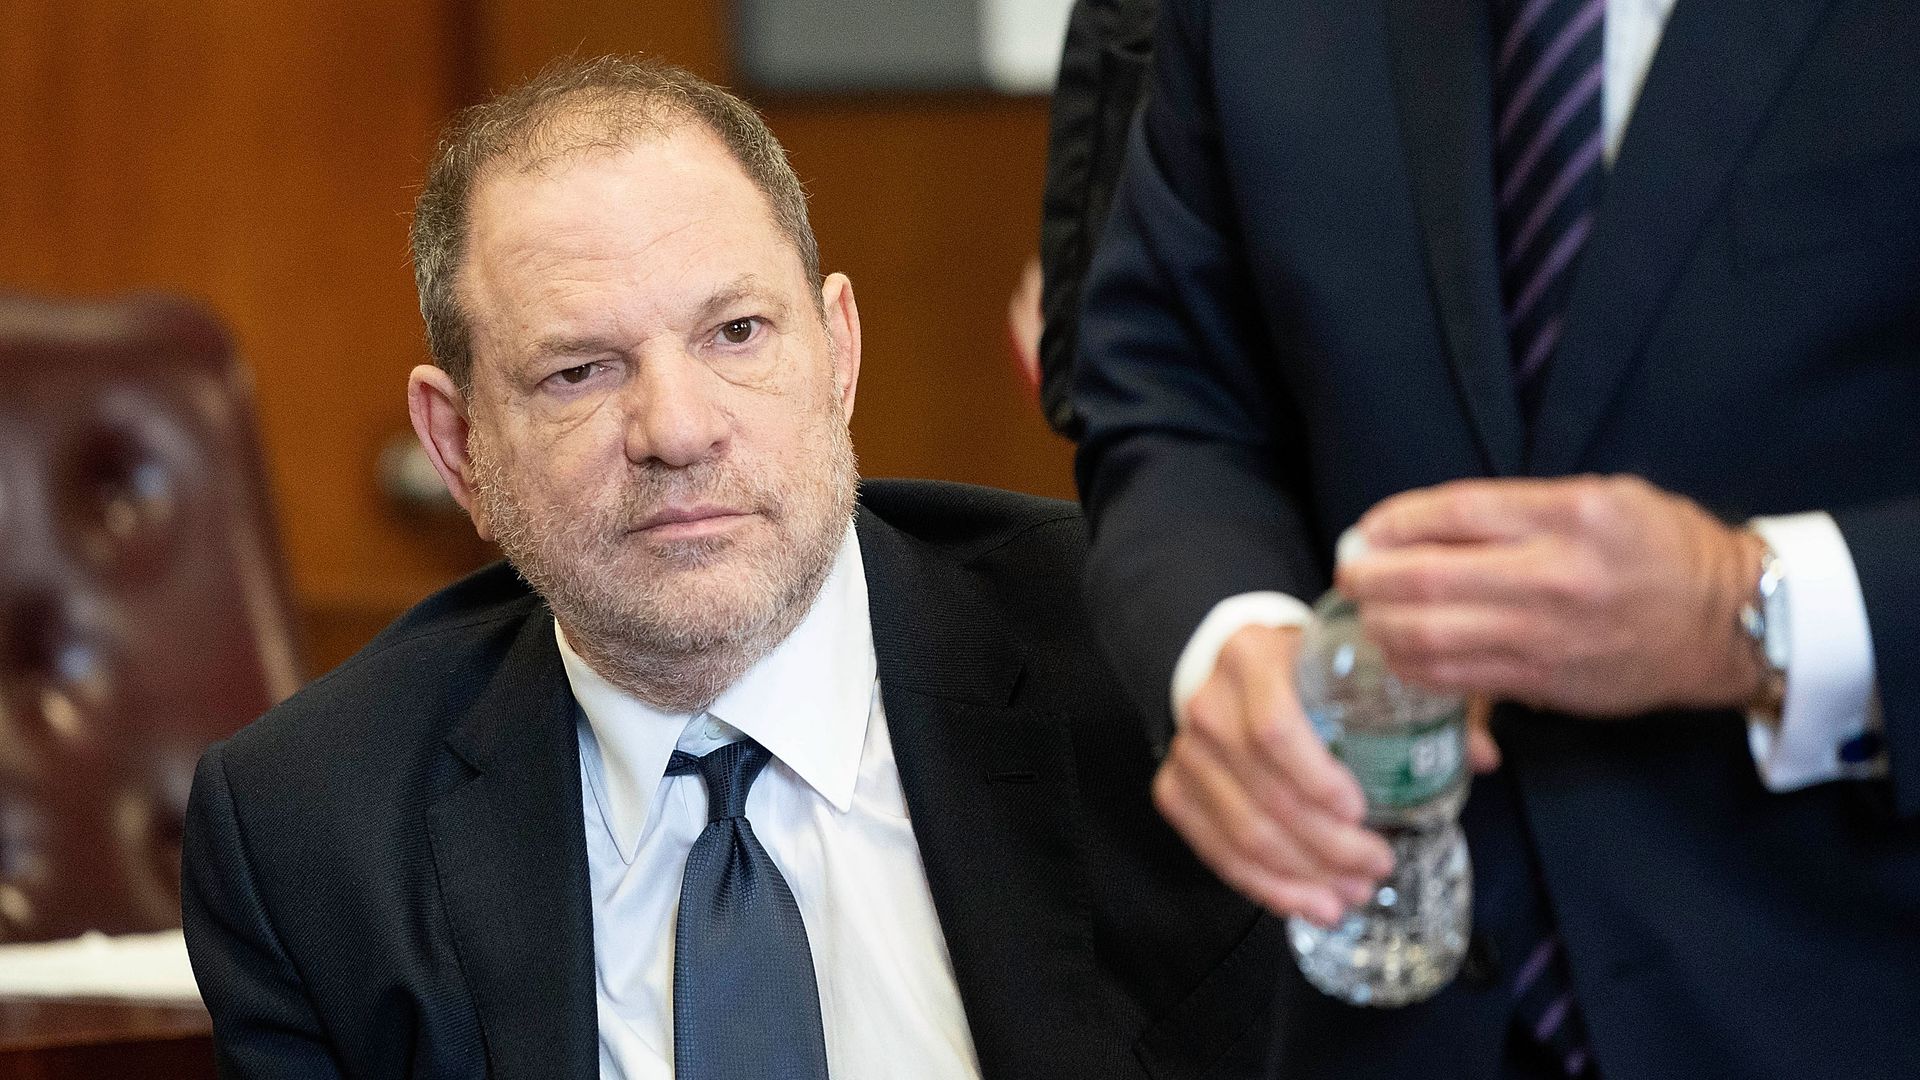 Harvey Weinstein facing trial